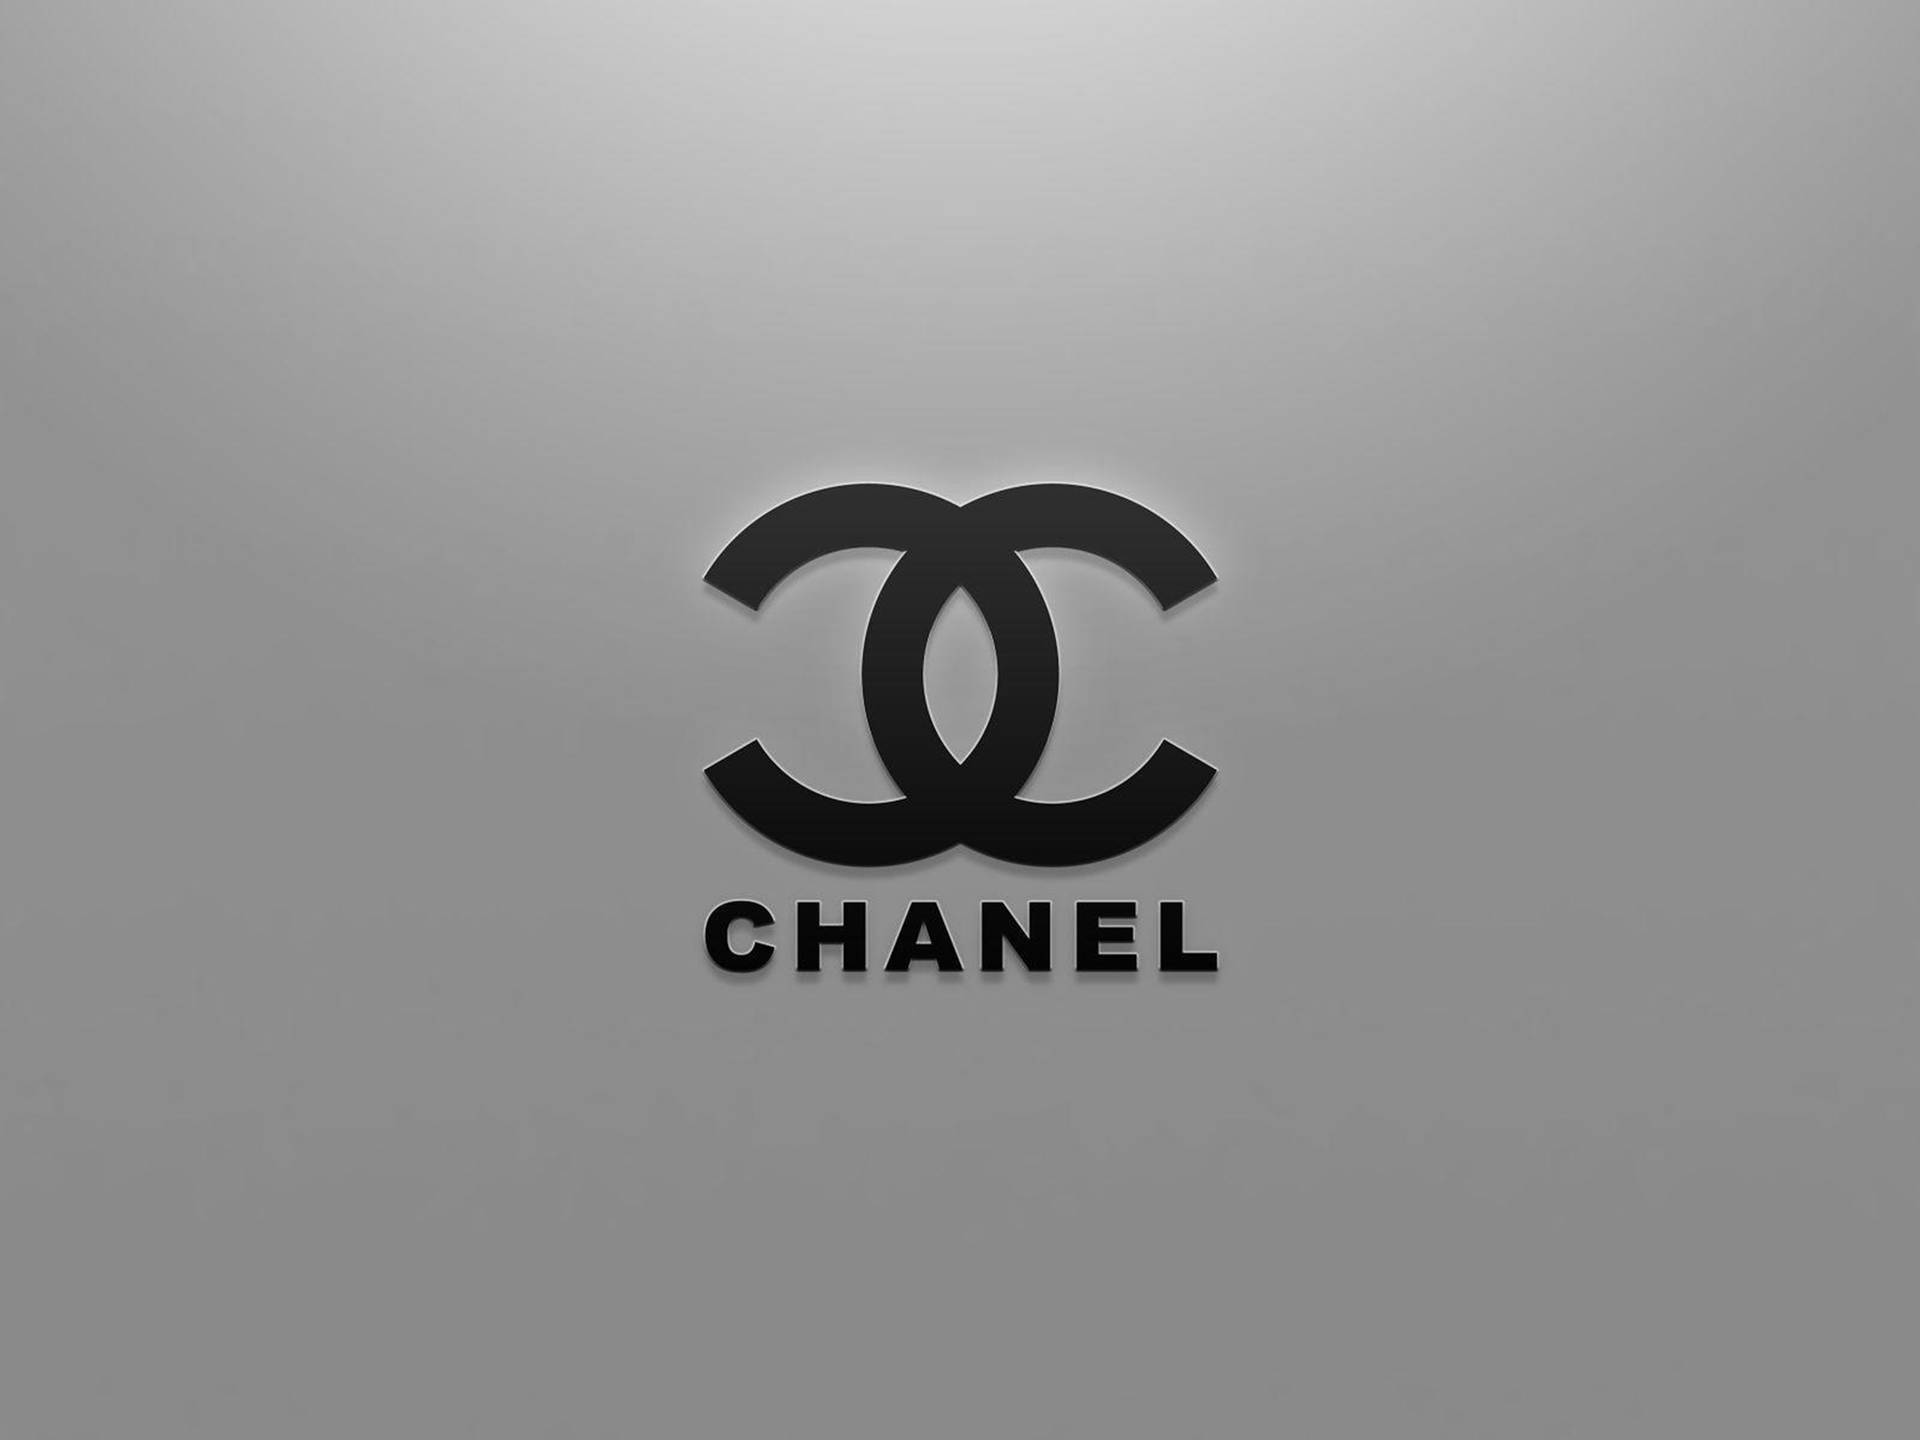 50 Chanel iPhone Wallpaper  WallpaperSafari